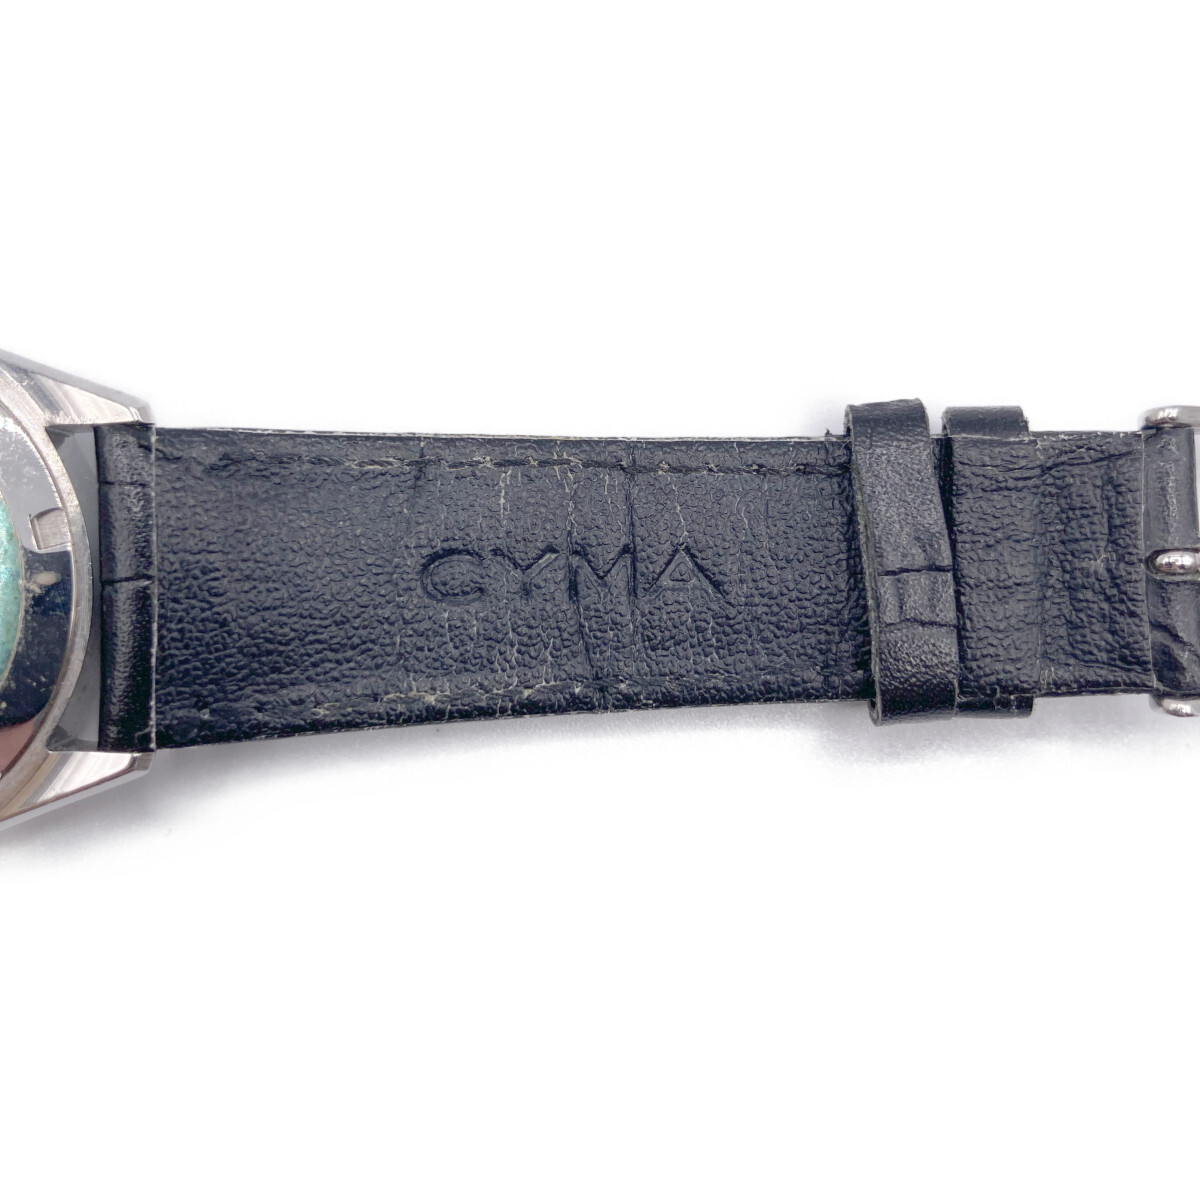 1 jpy CYMA Cima 14535 TRIPLEXtolip Rex self-winding self-winding watch wristwatch silver / black leather belt men's 